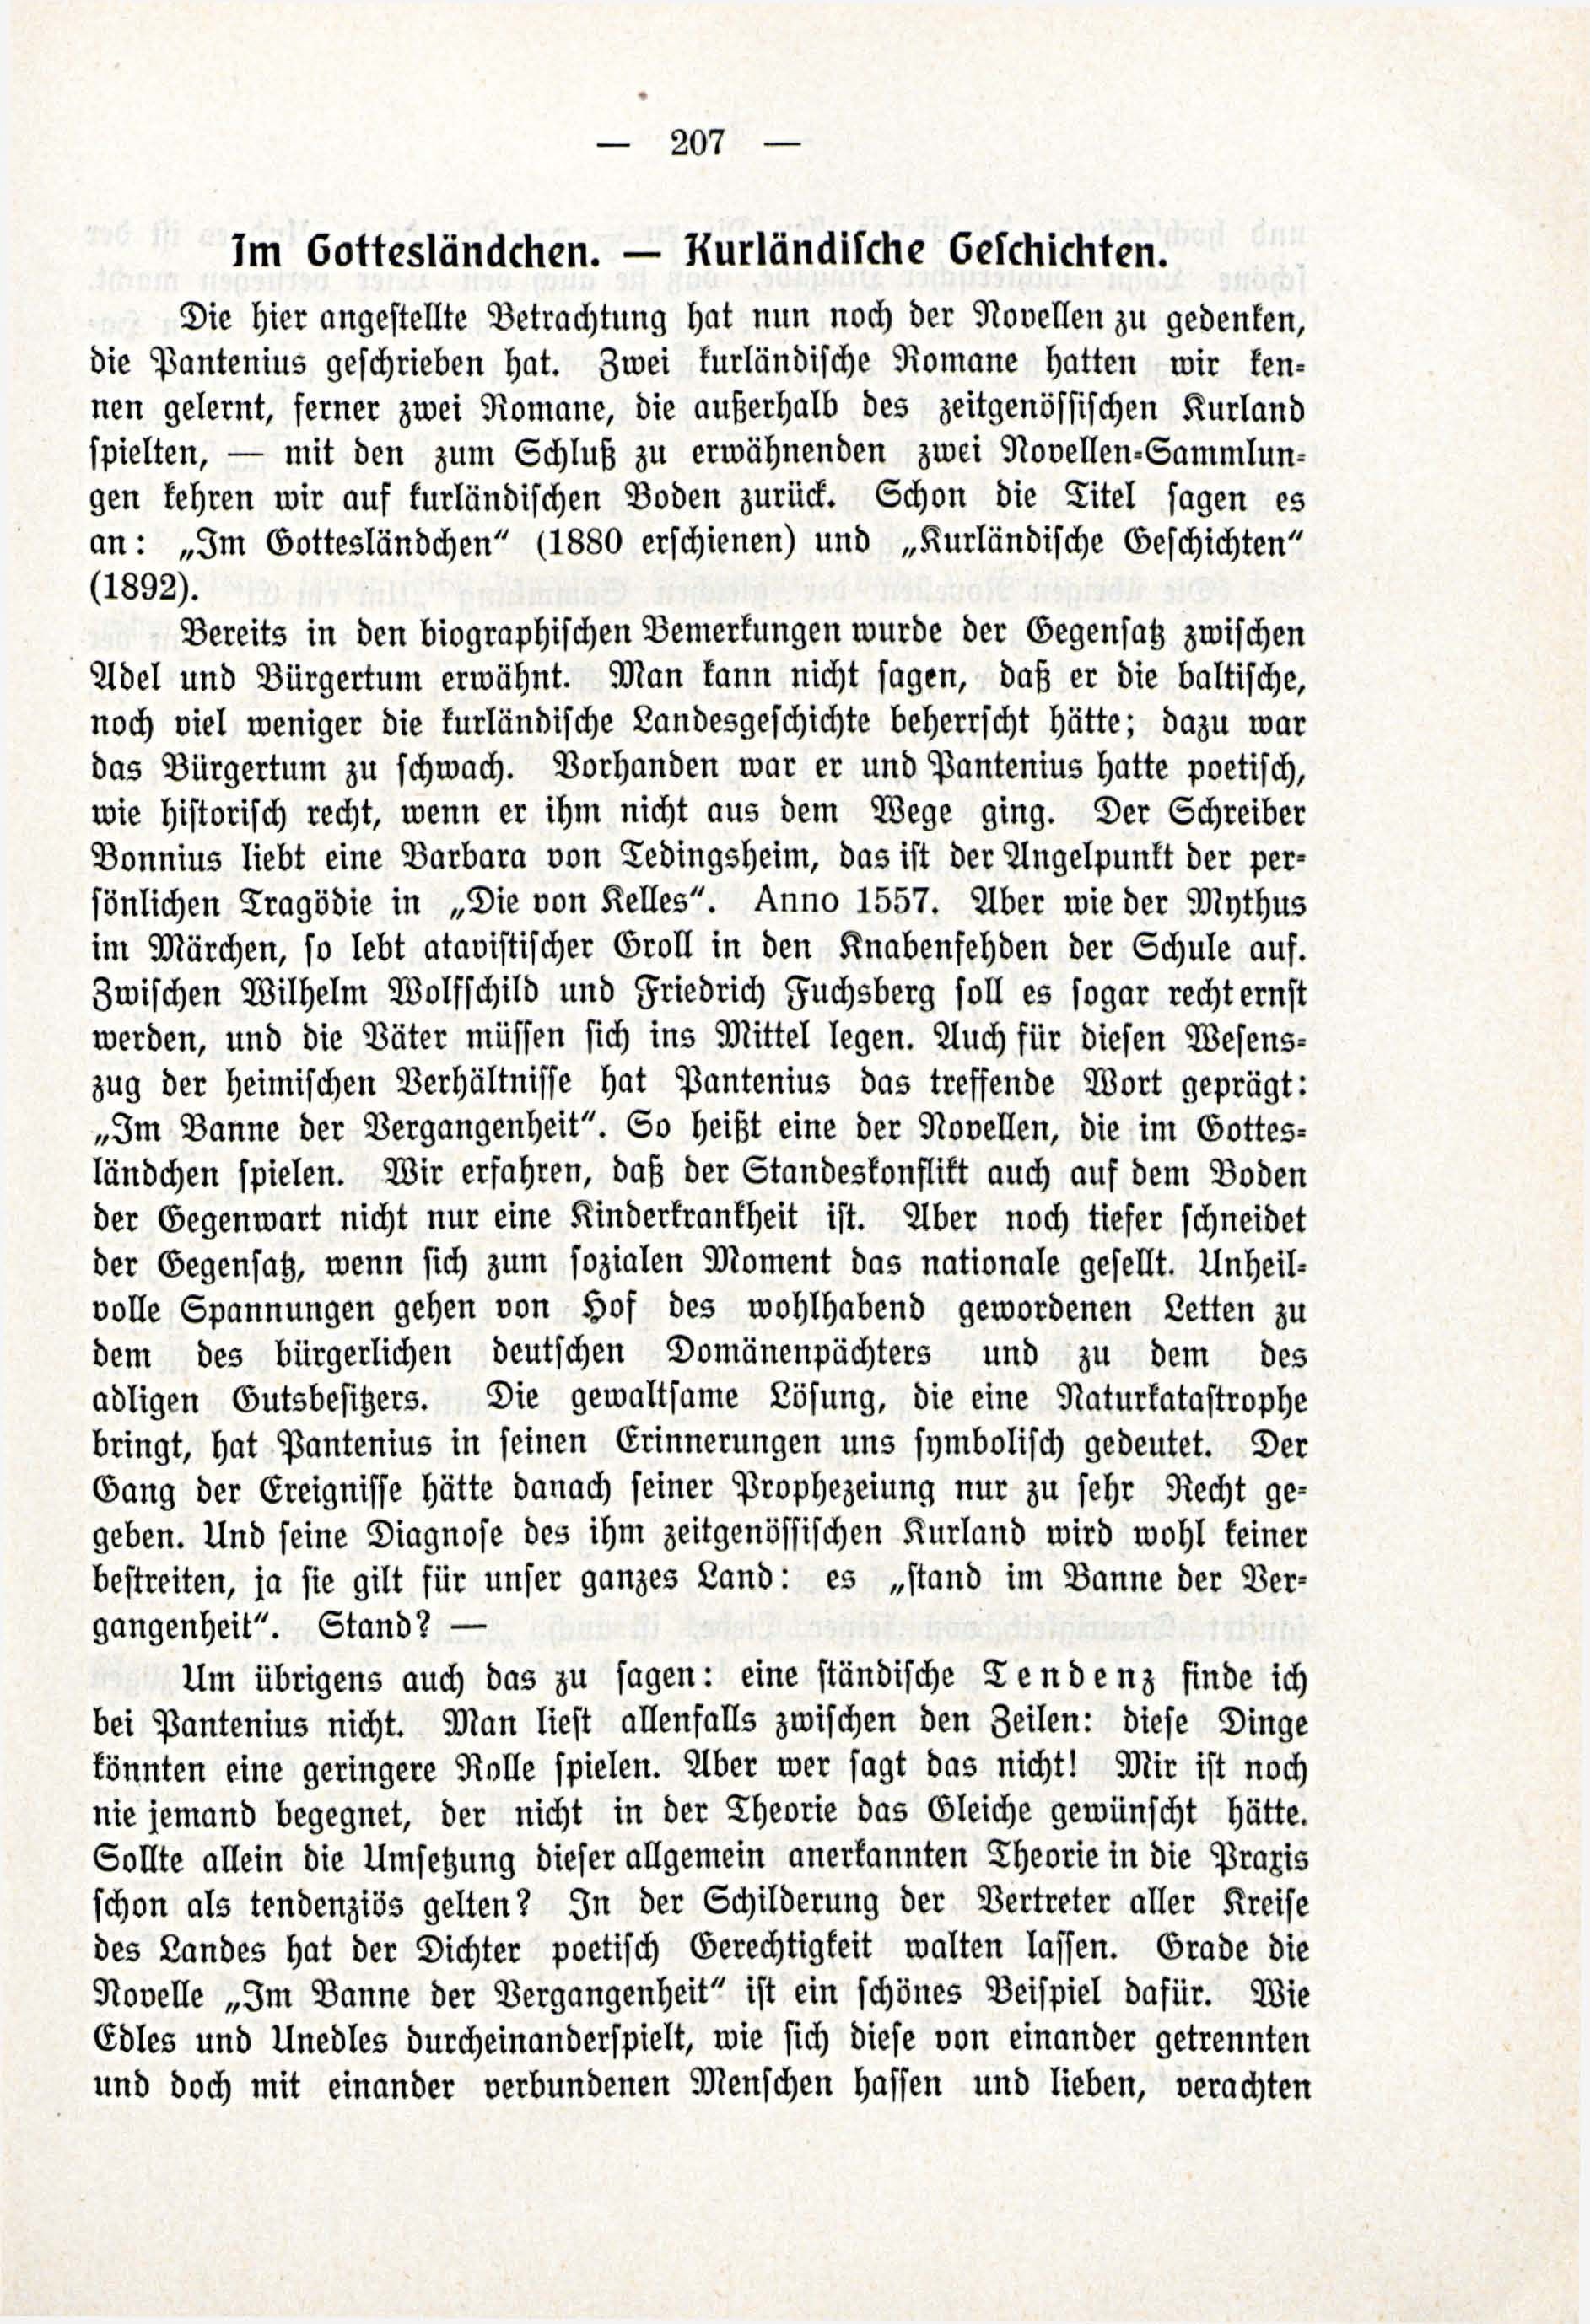 Deutsche Monatsschrift für Russland [3/03] (1914) | 53. (207) Main body of text